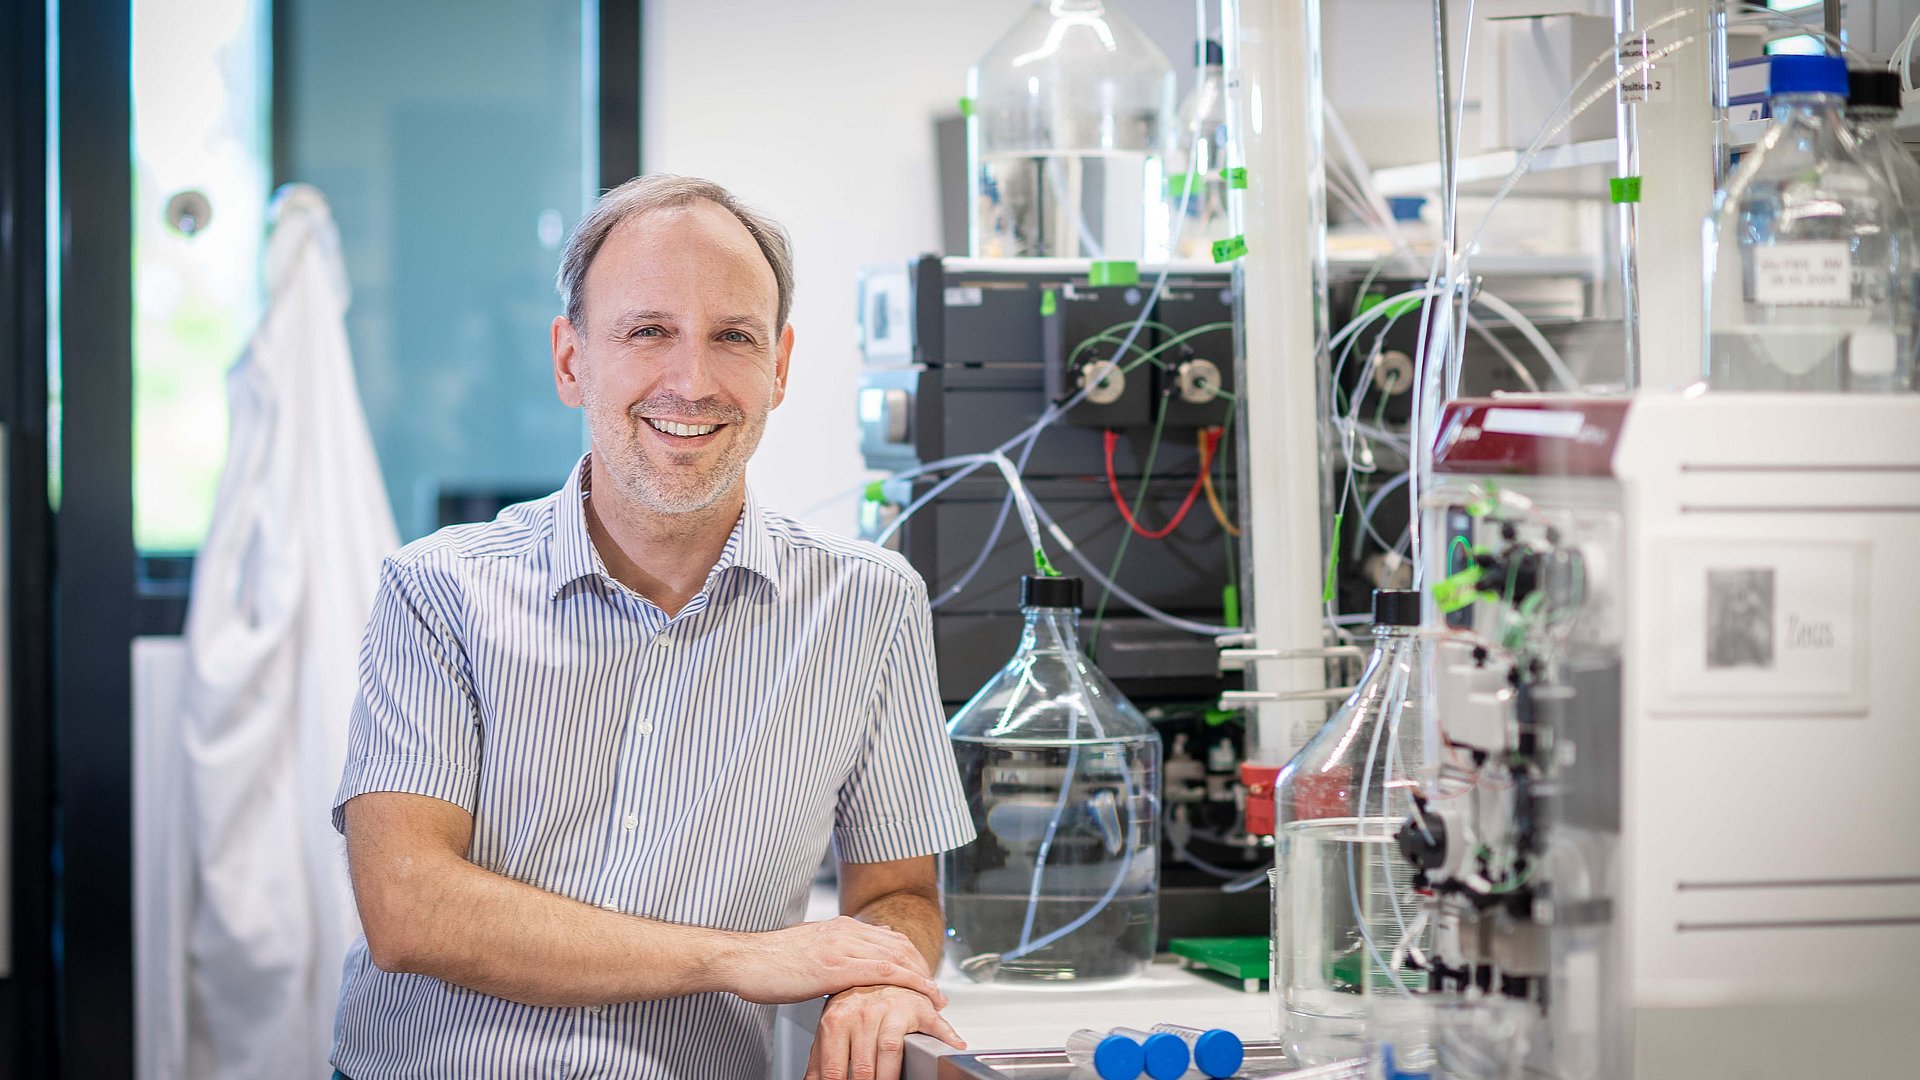 Ein Team um Prof. Oliver Lieleg forscht an Mucinen - Schleimmolekülen - für medizinische Materialien und Anwendungen.